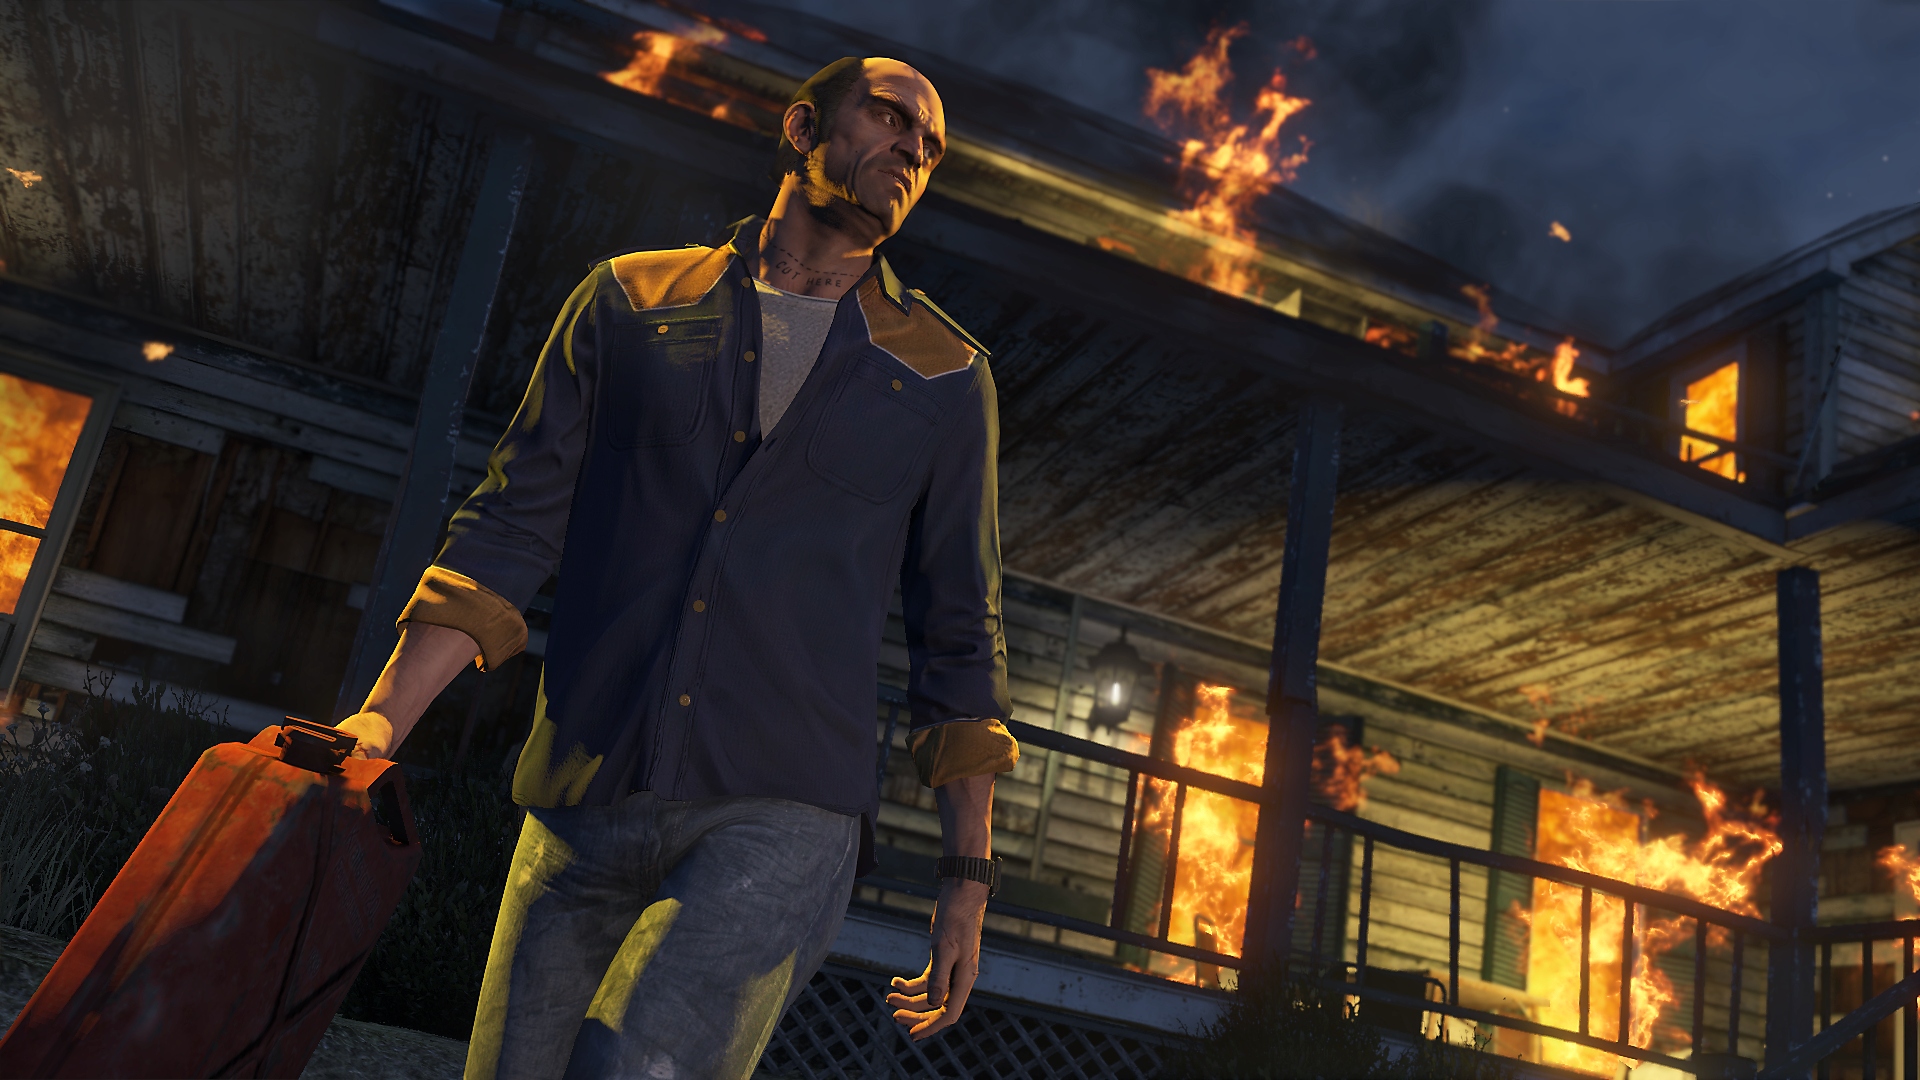 Captura de pantalla de Grand Theft Auto V que muestra al personaje principal, Trevor, alejándose de un edificio en llamas mientras sostiene un bidón de gasolina